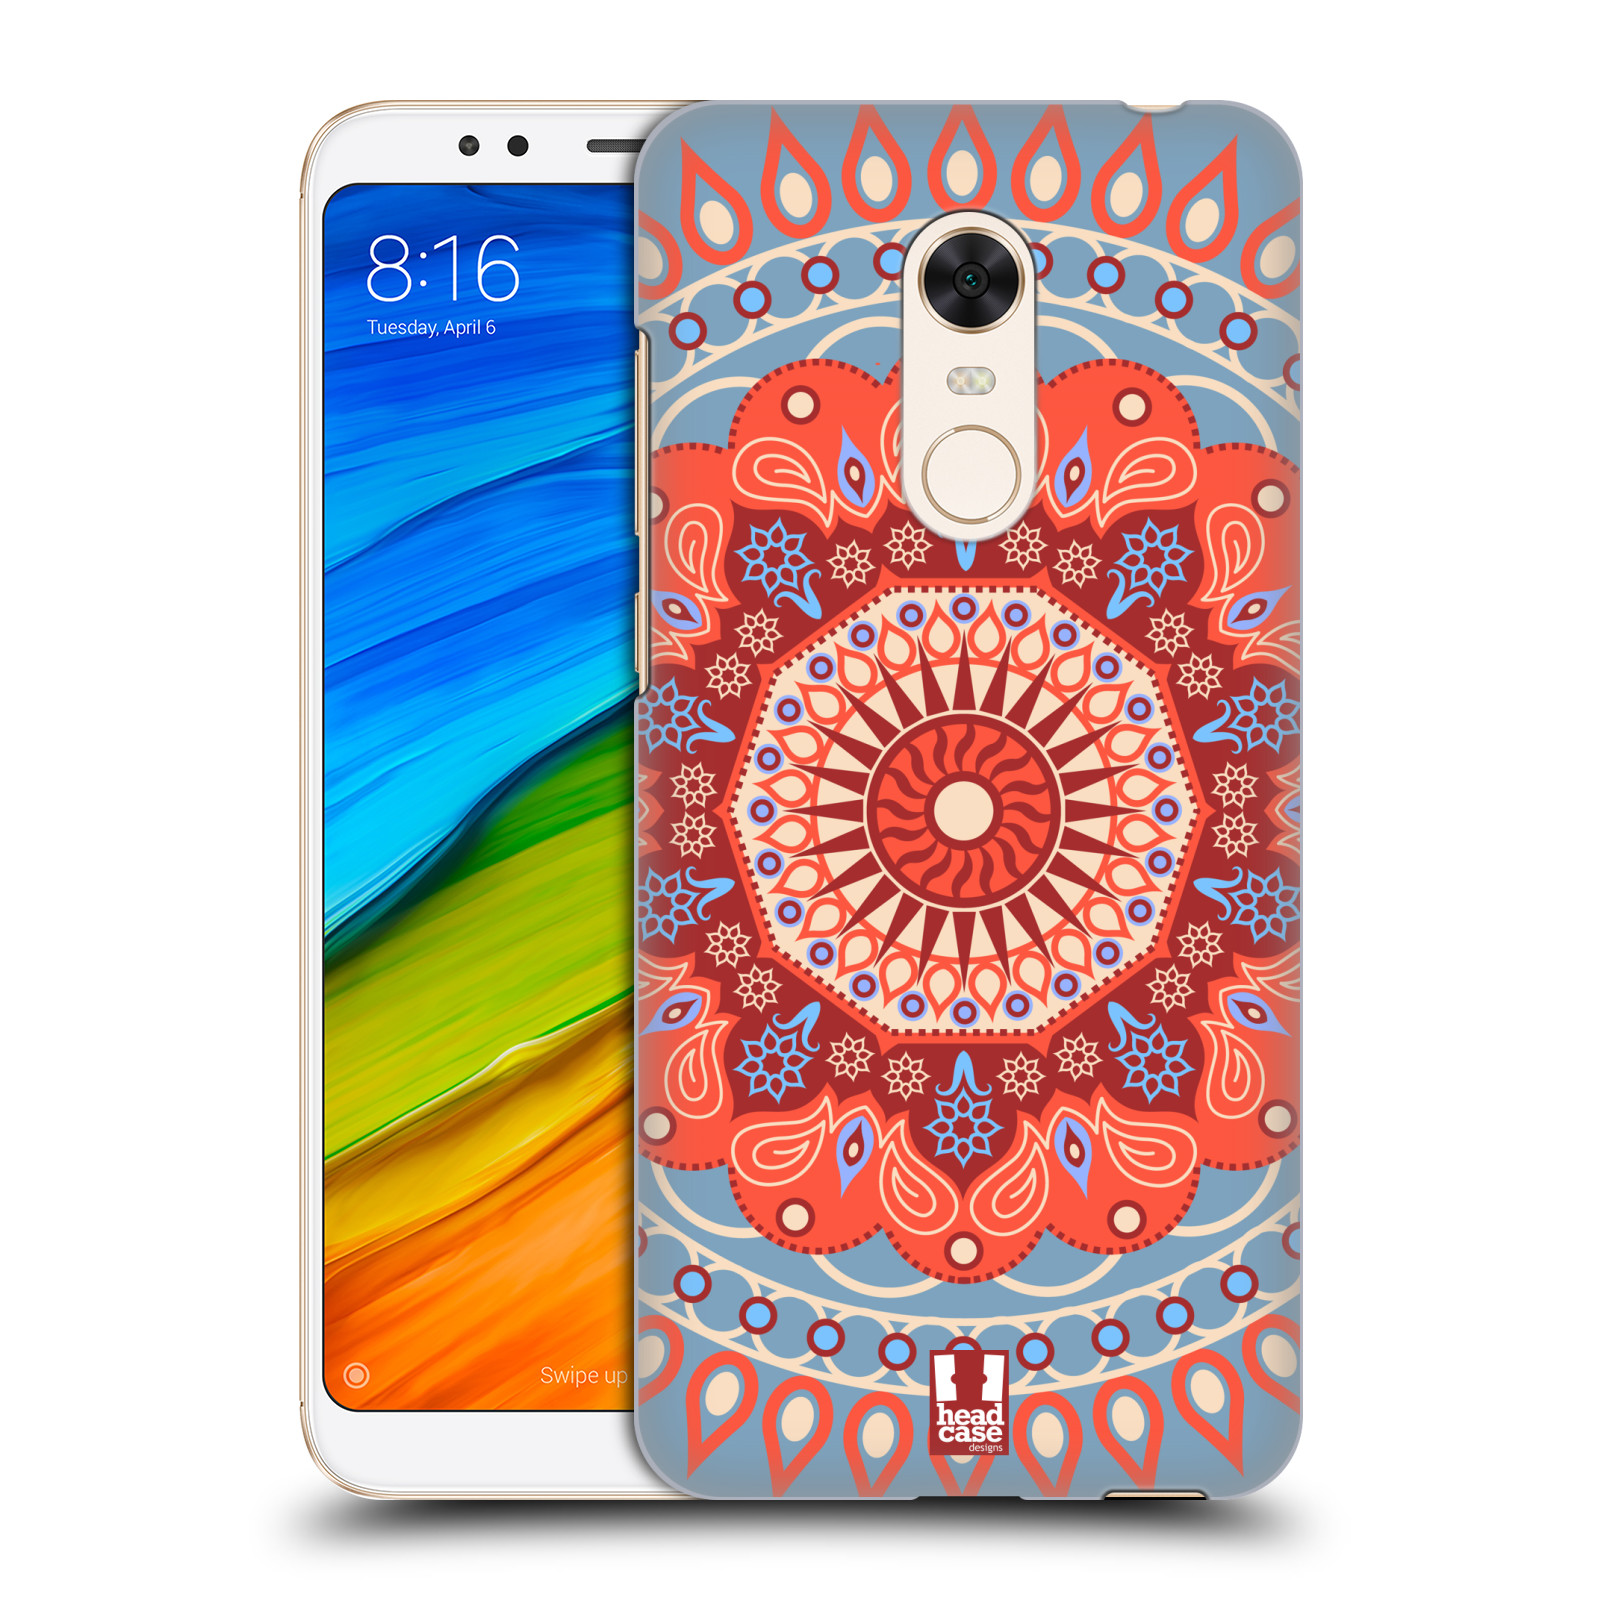 HEAD CASE plastový obal na mobil Xiaomi Redmi 5 PLUS vzor Indie Mandala slunce barevný motiv ČERVENÁ A MODRÁ